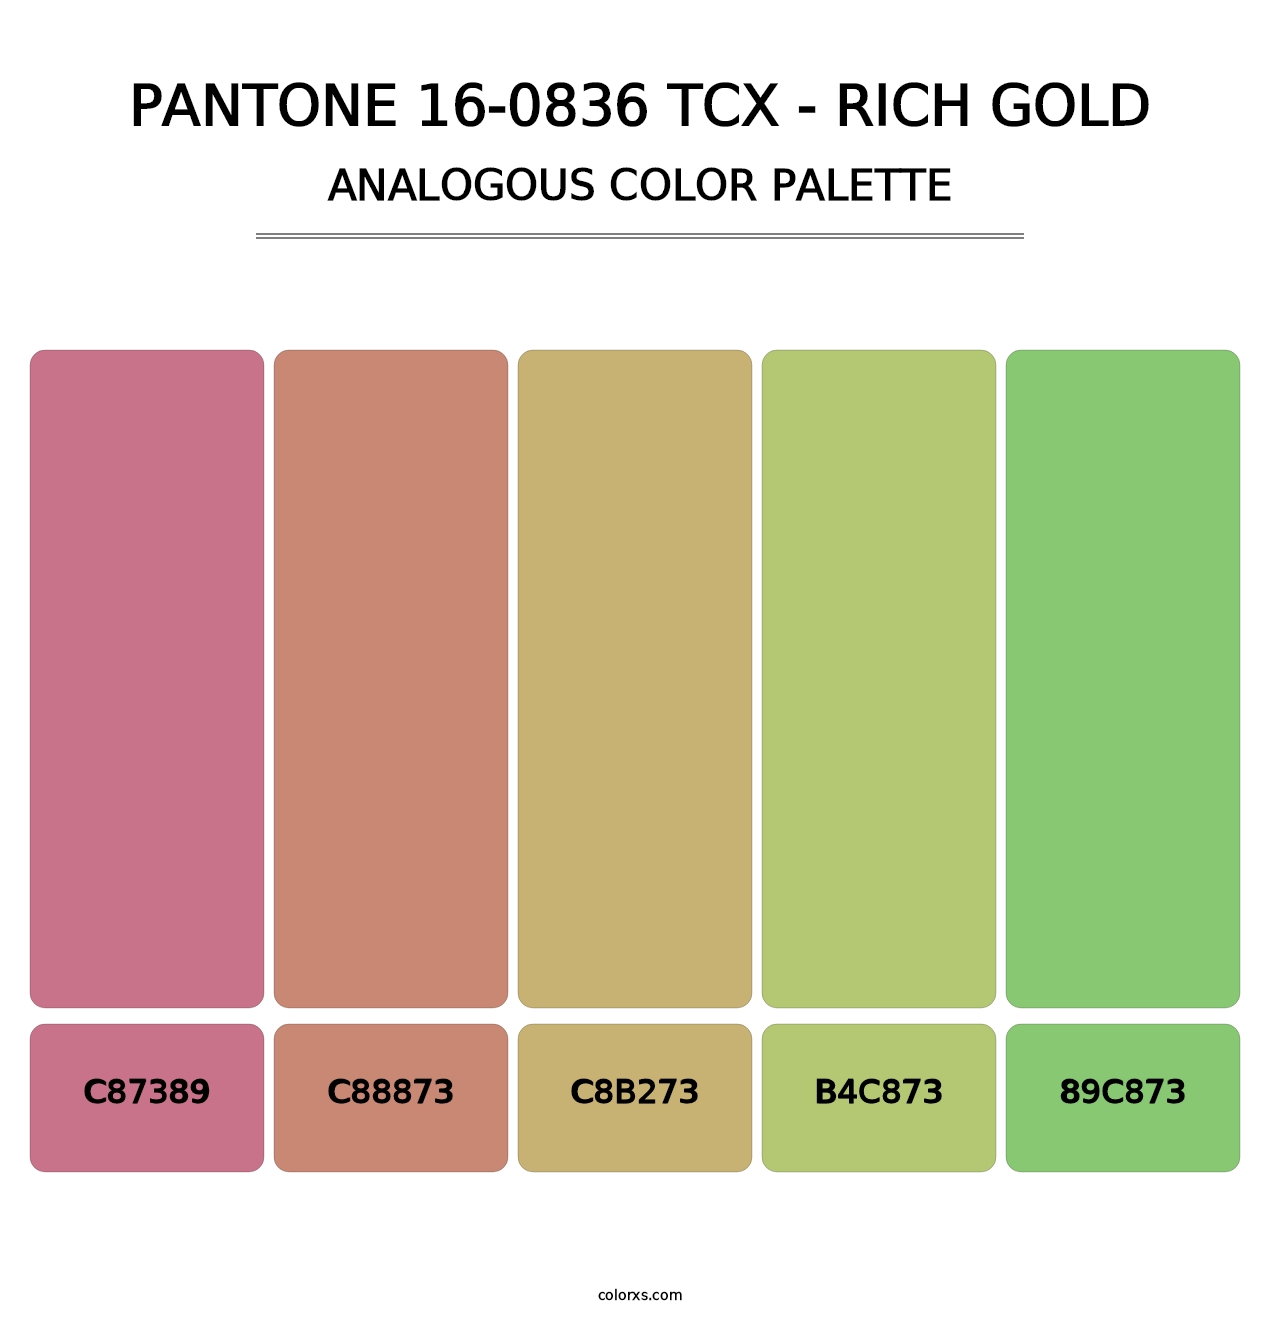 PANTONE 16-0836 TCX - Rich Gold - Analogous Color Palette